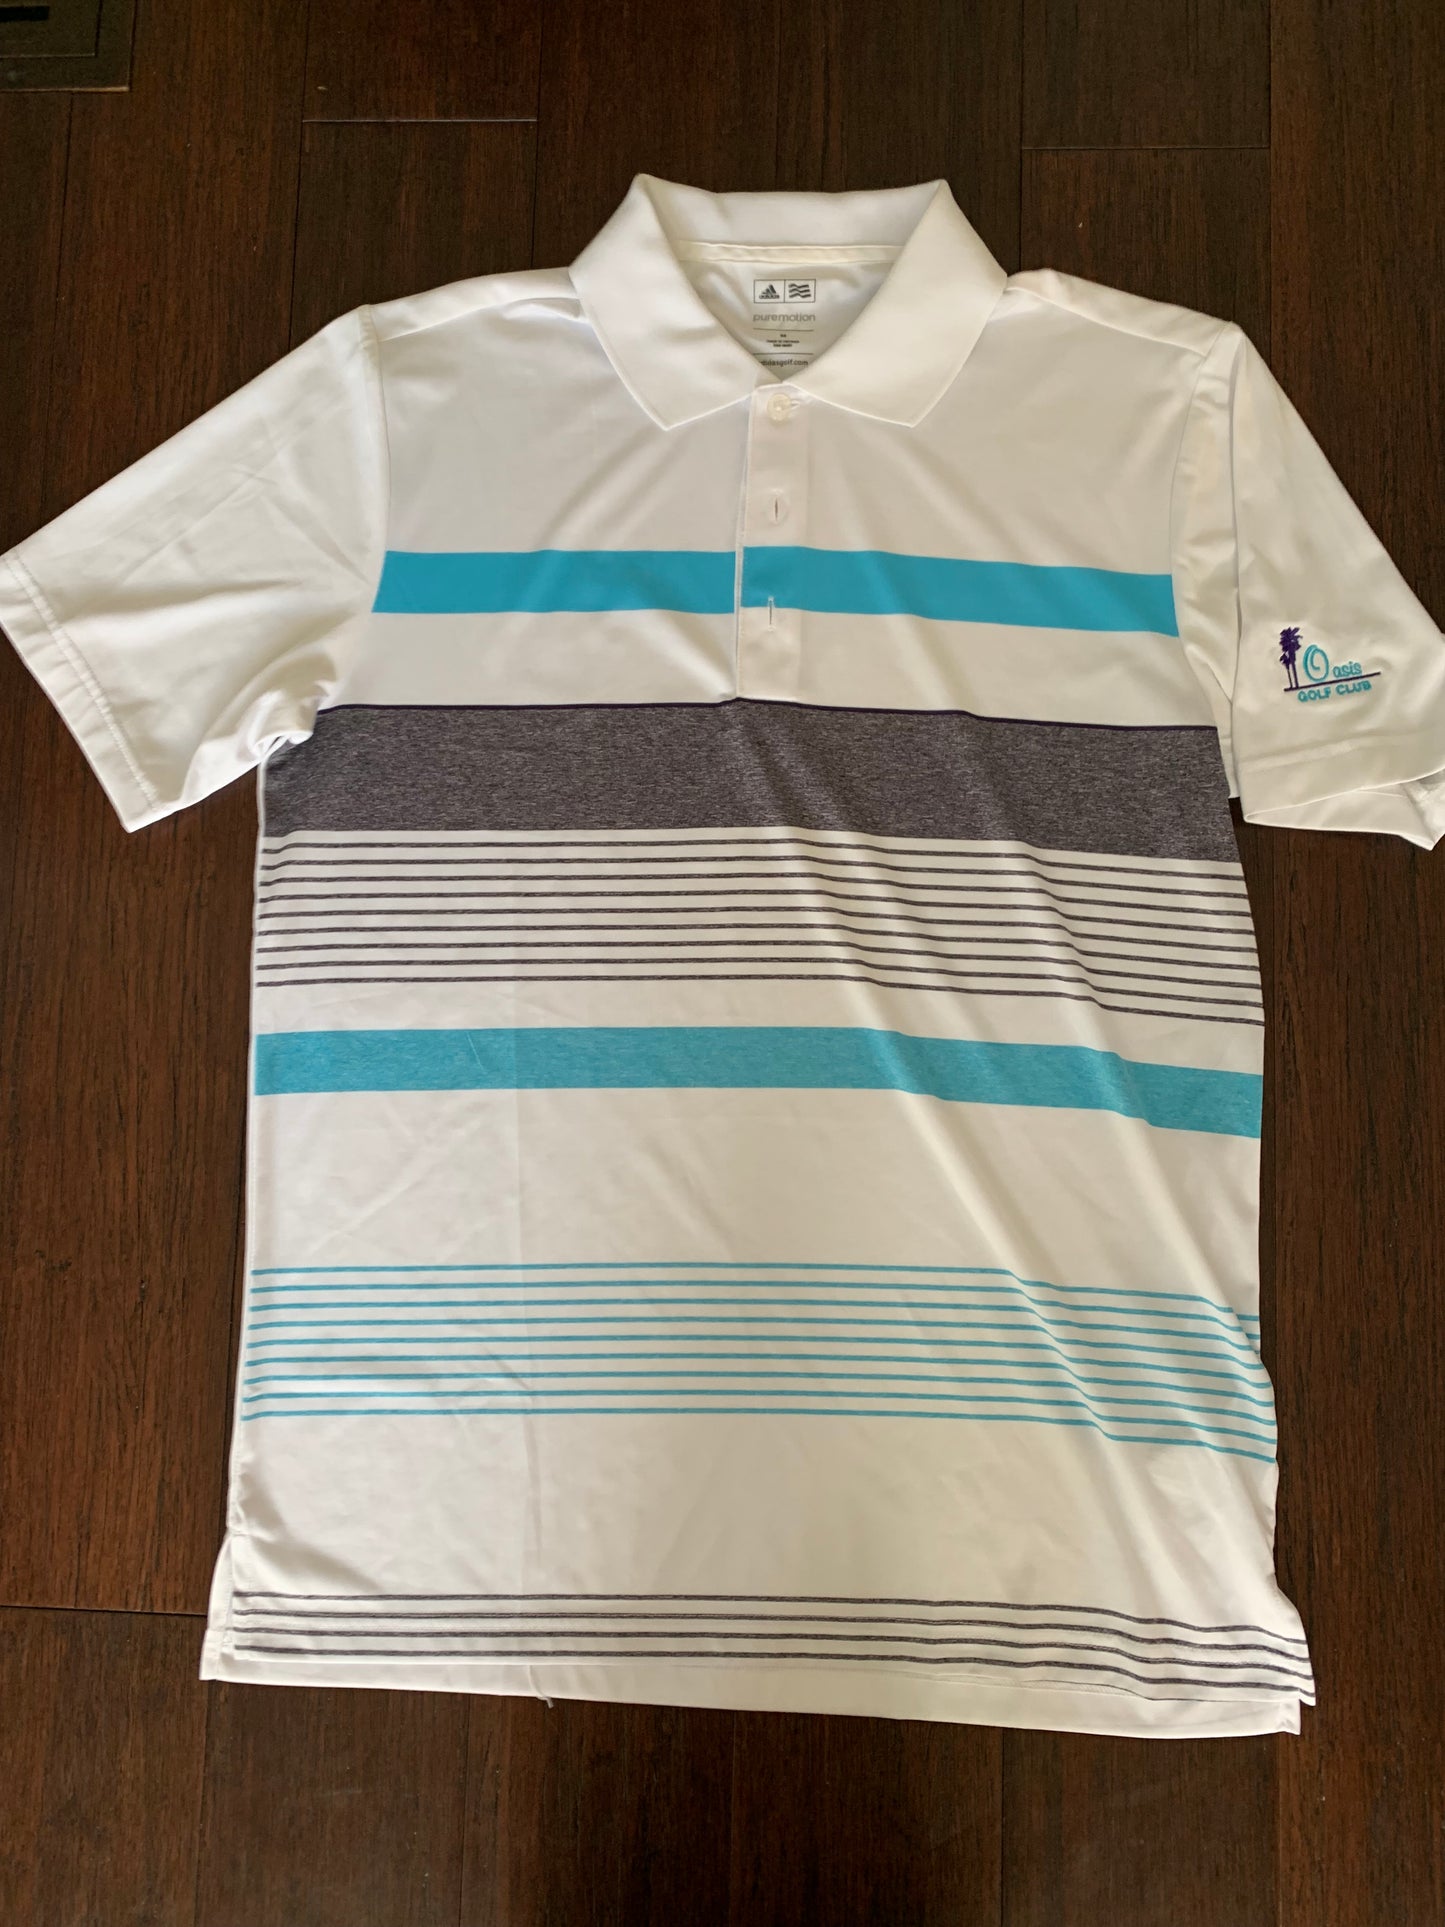 Adidas Dry Fit Golf Shirt, blue/gray/white, Mens M